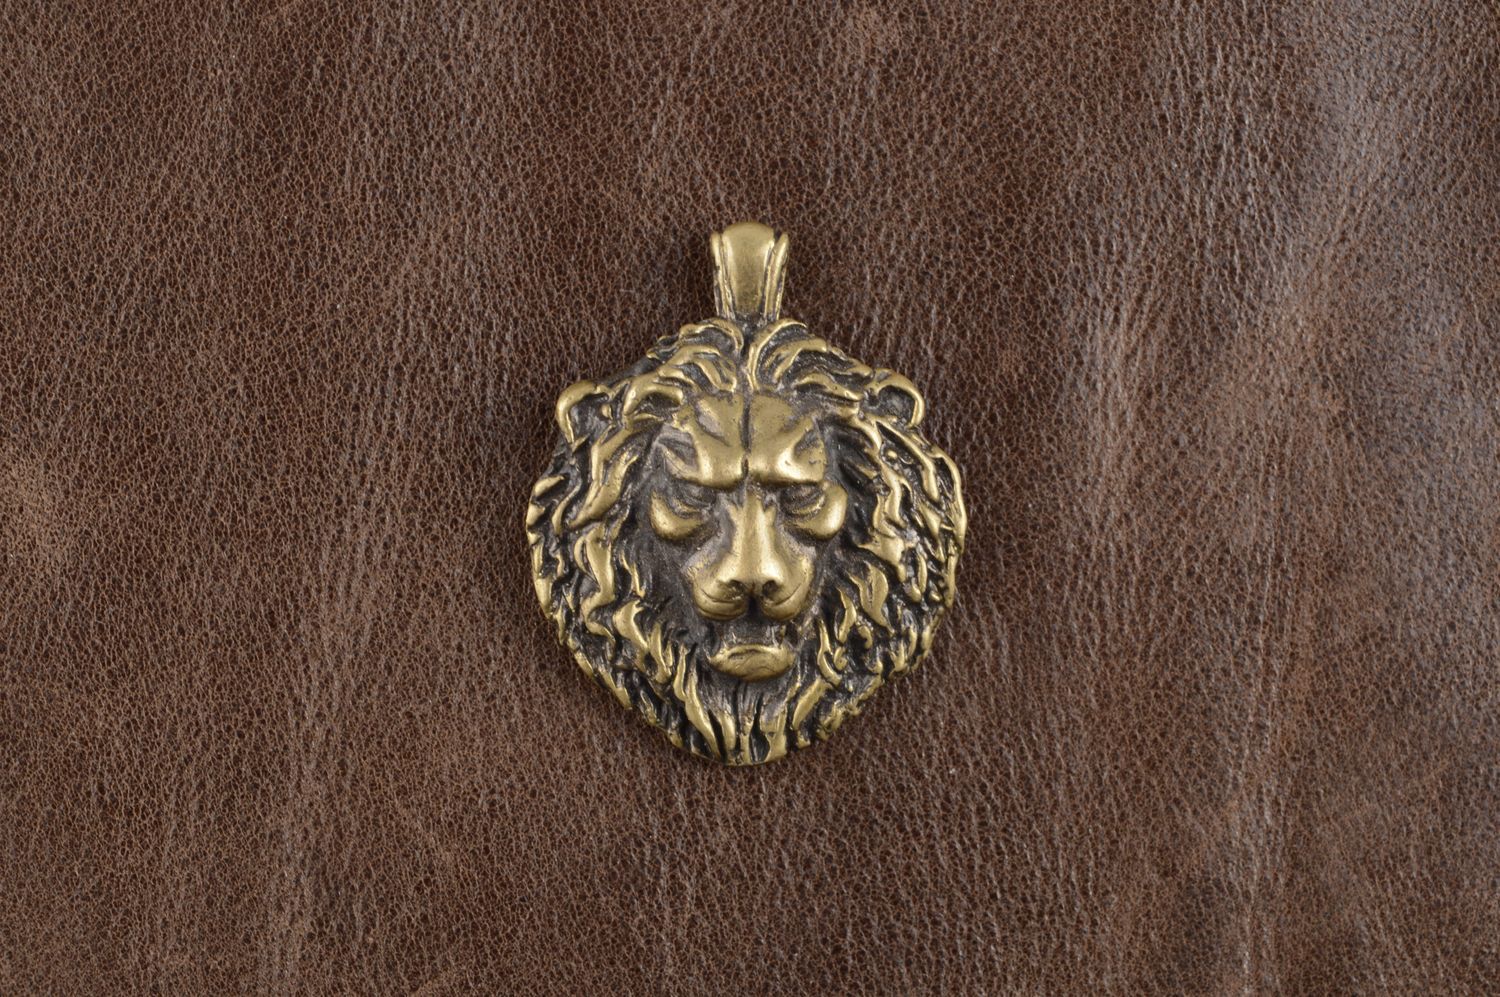 Украшение ручной работы кулон на шею украшение из бронзы красивое мужское Лев фото 1